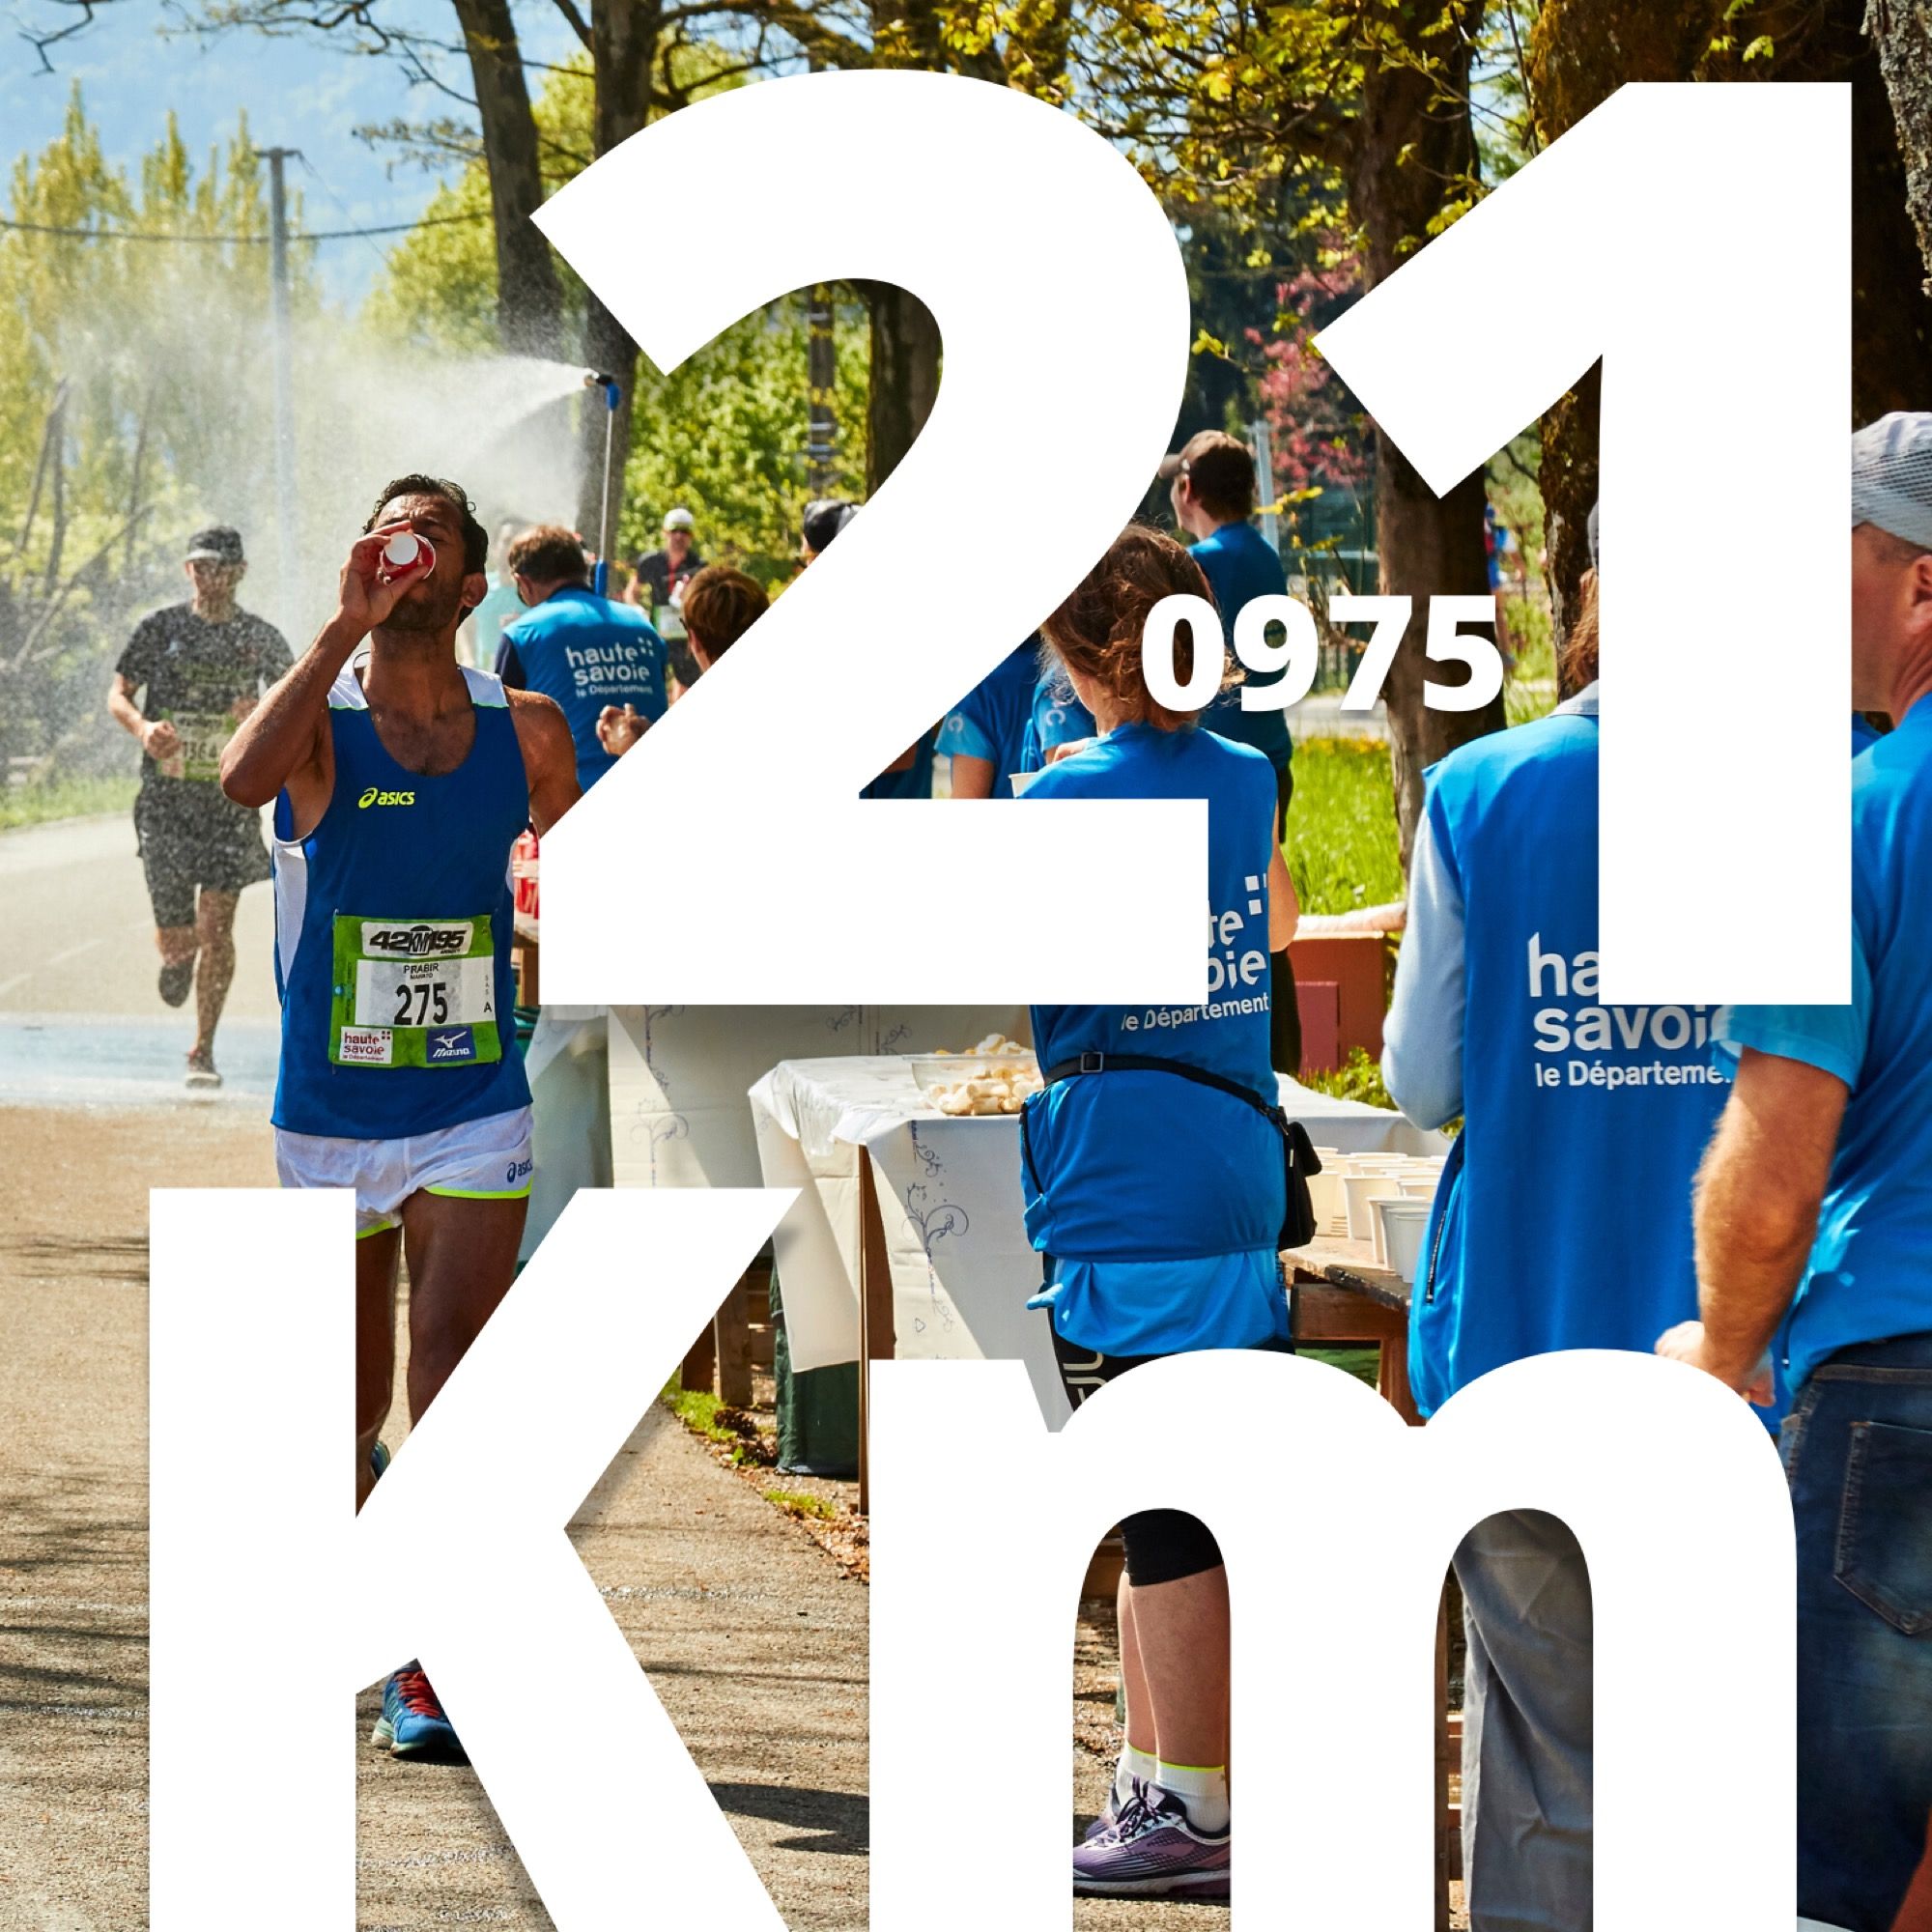 Half Marathon Annecy